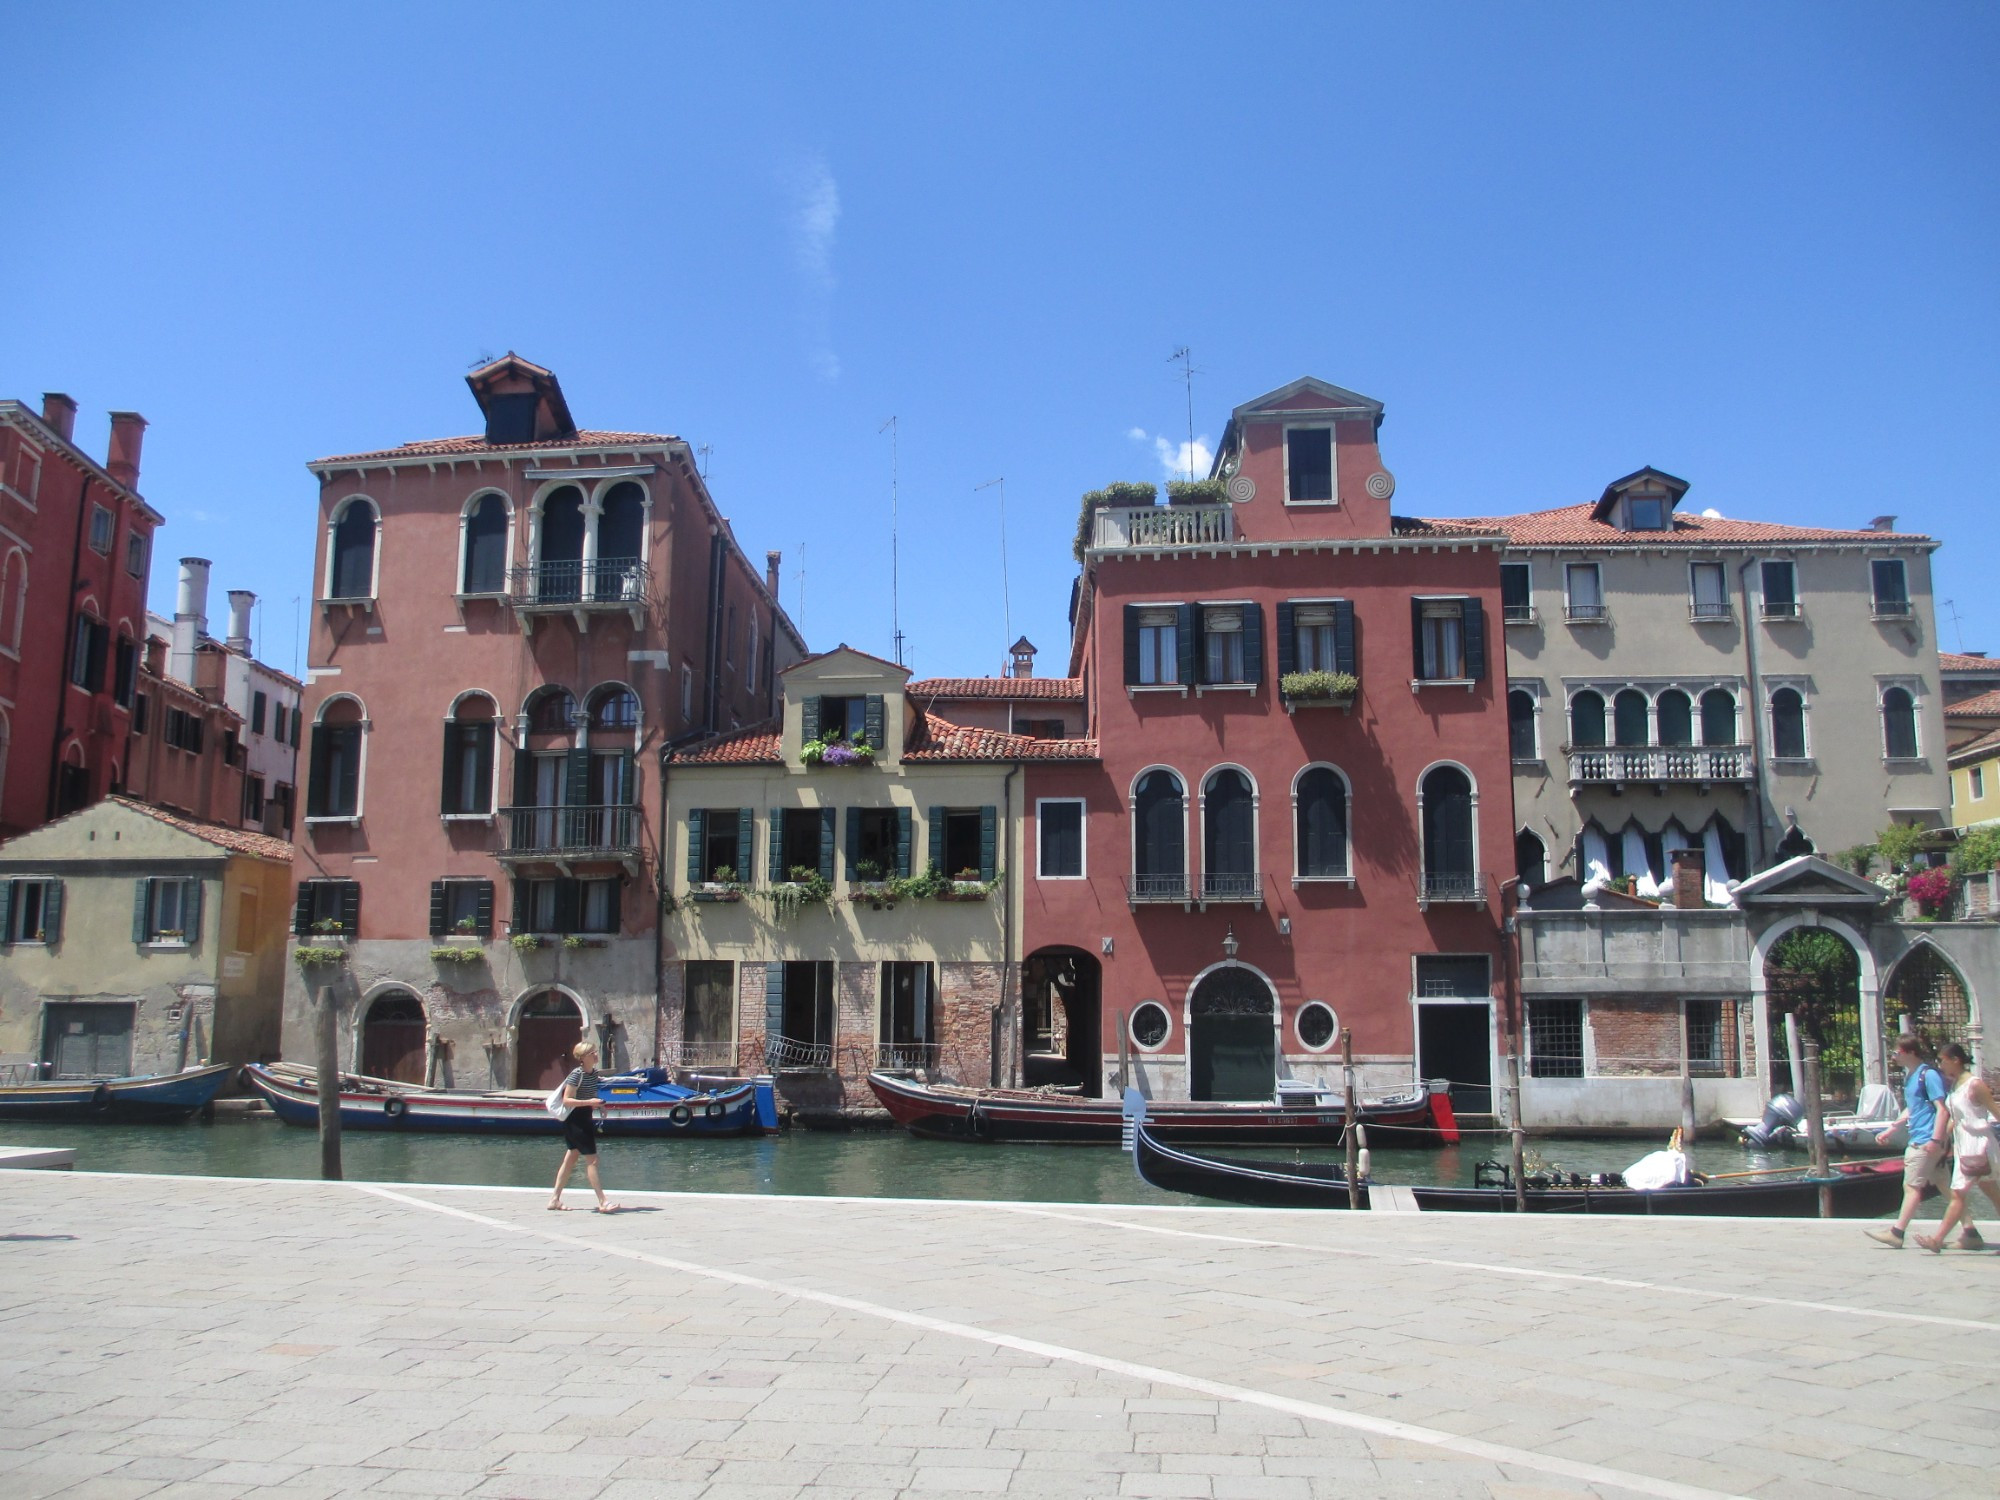 Венеция. (16.07.2014)